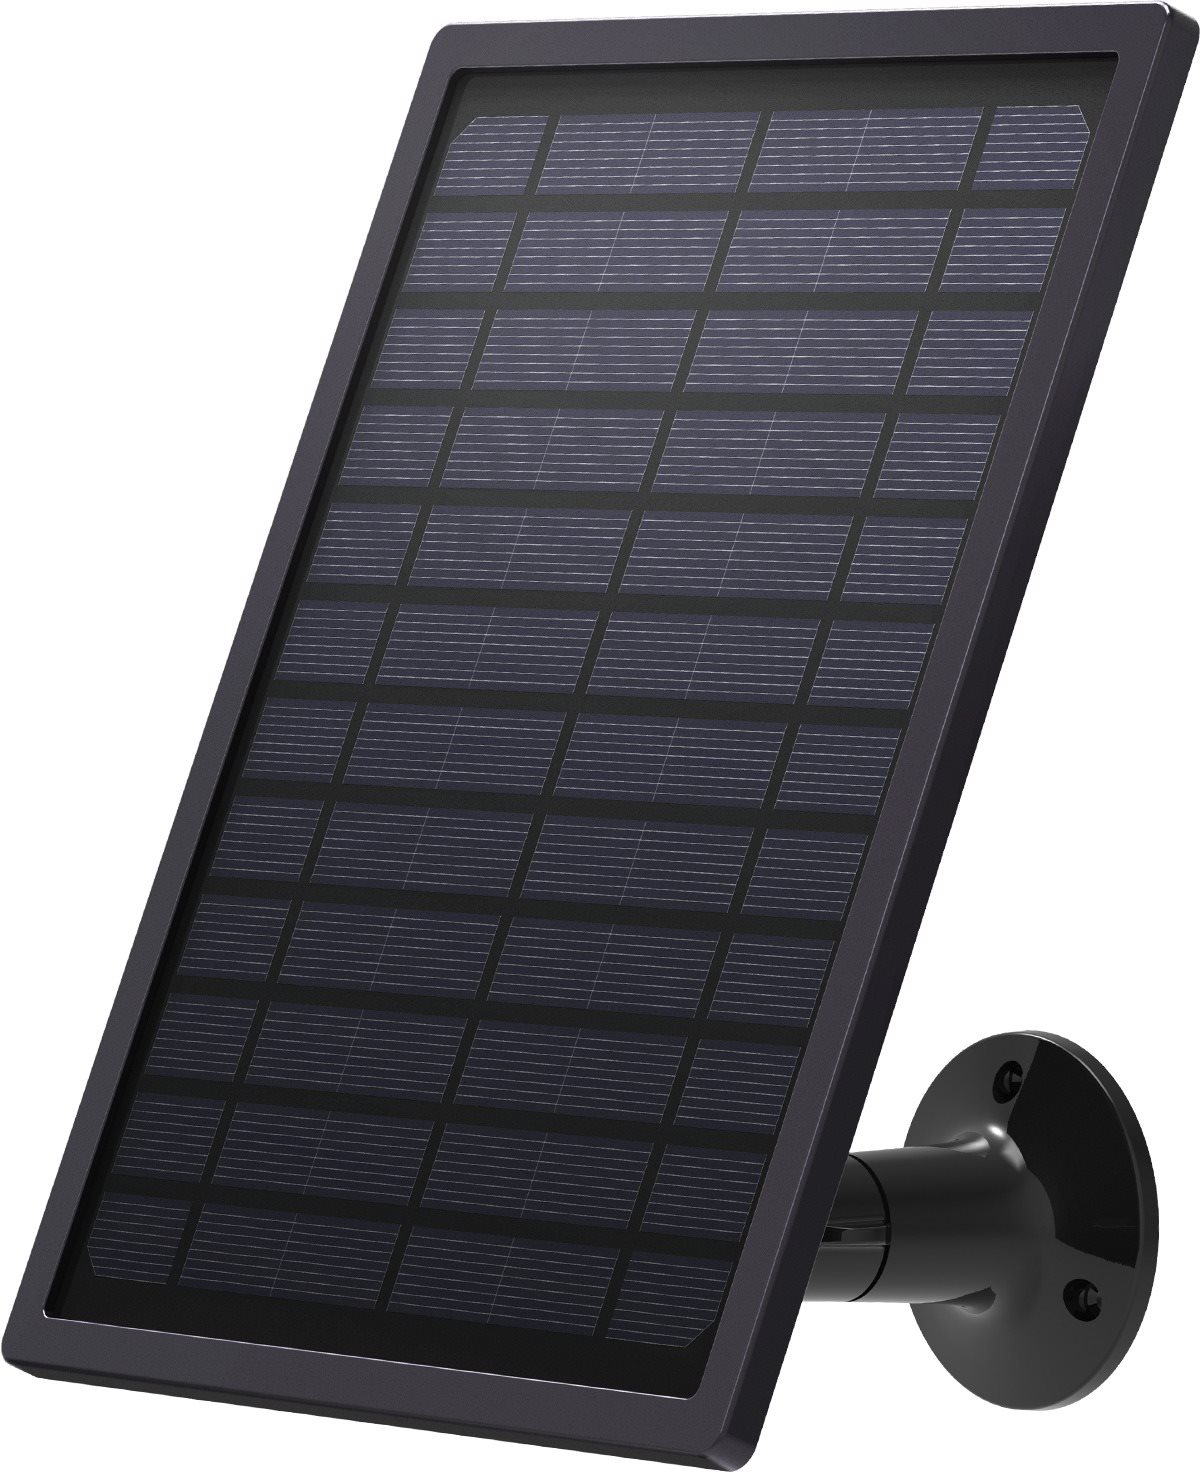 ARENTI Outdoor Solar Panel